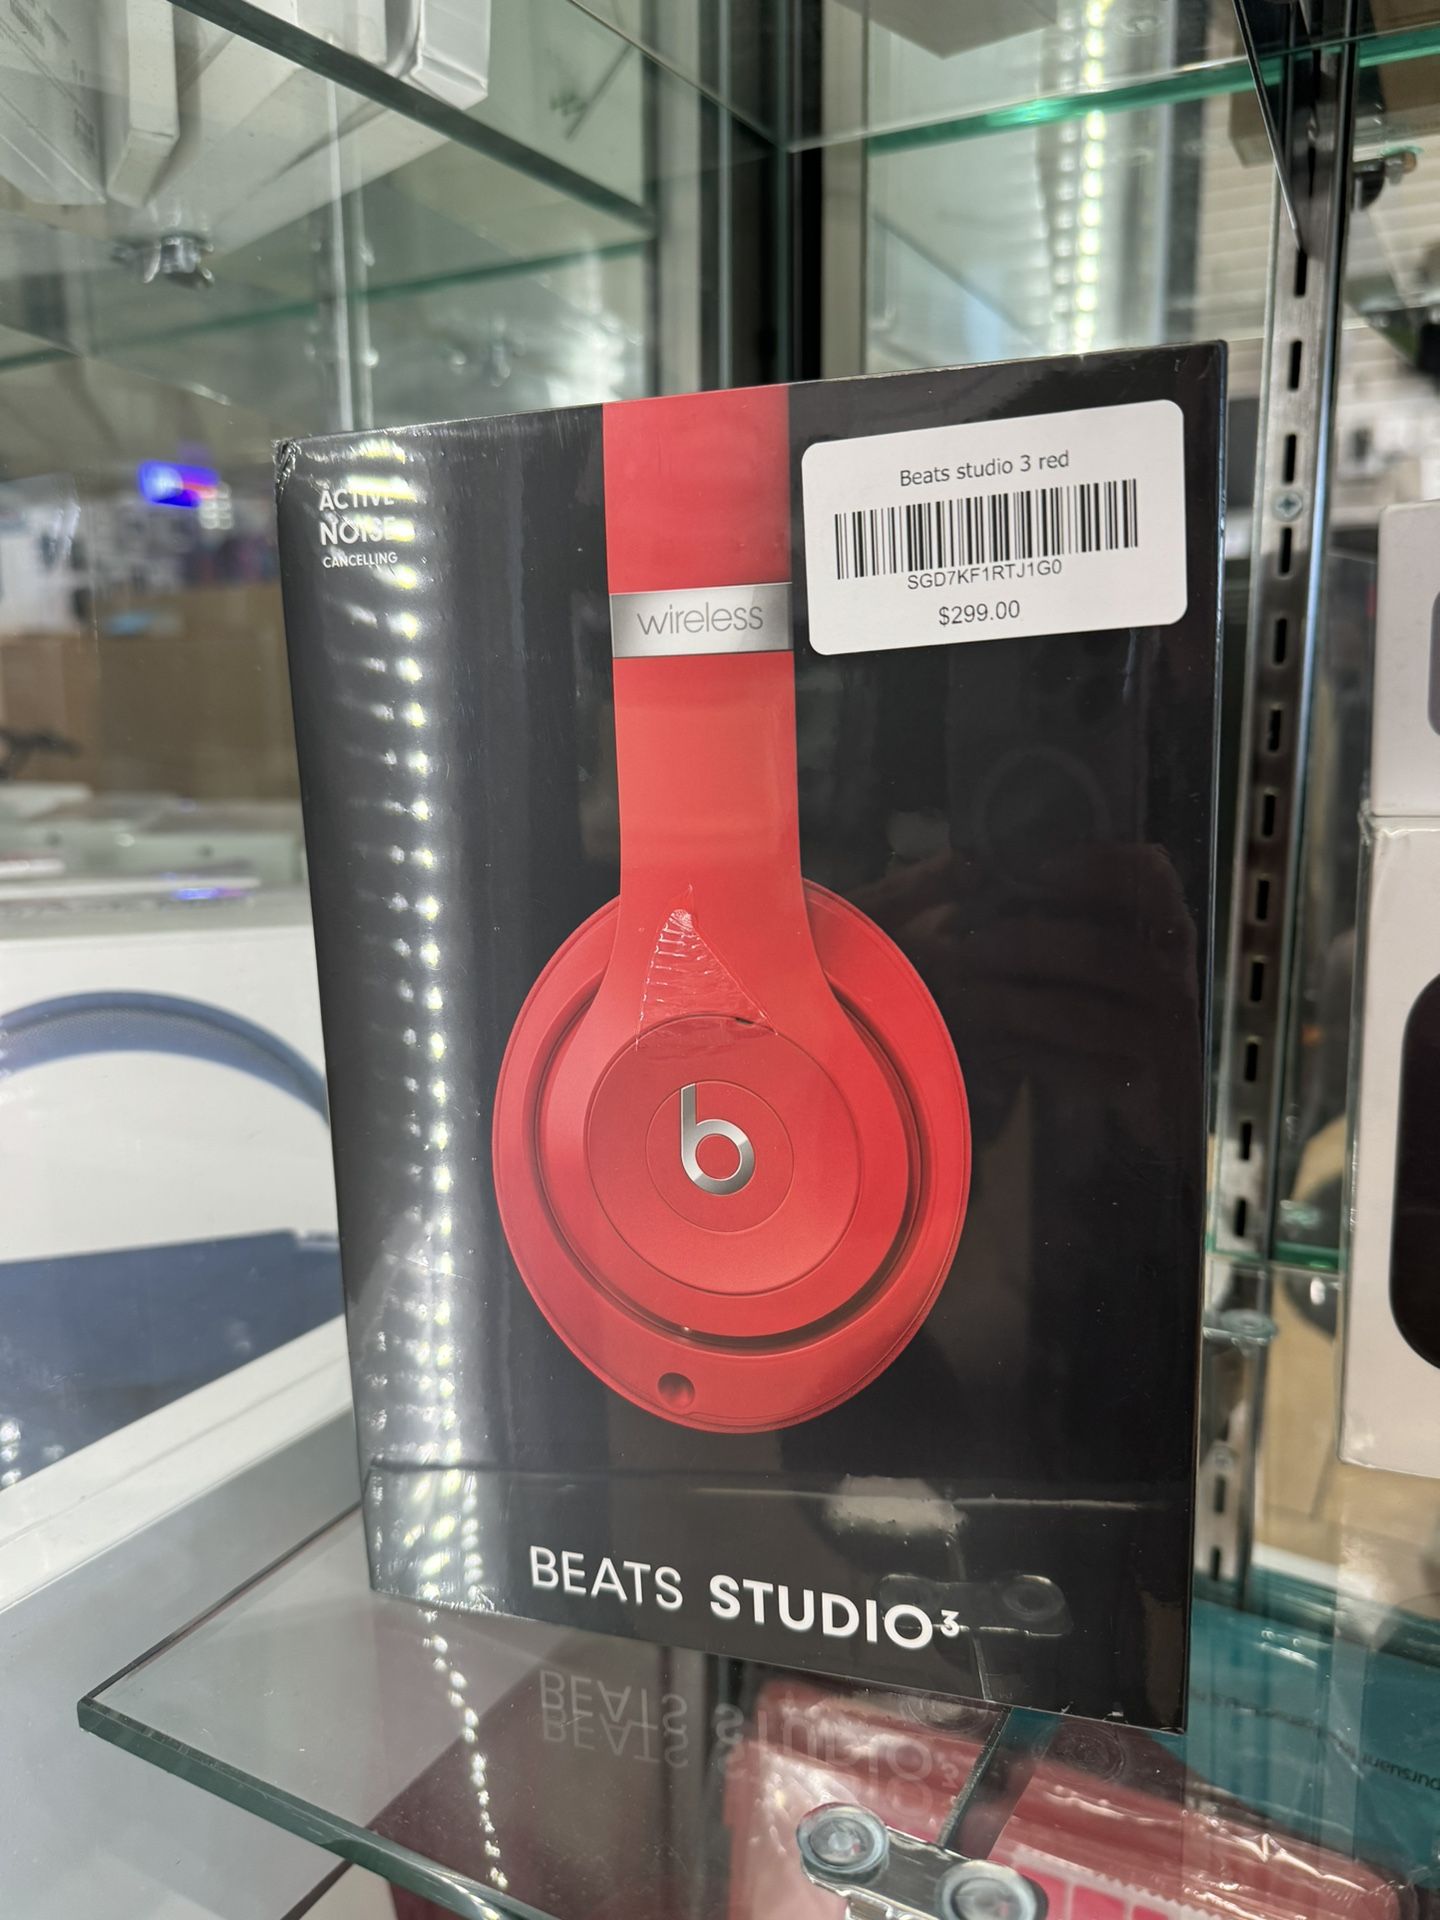 Beat Studio 3 